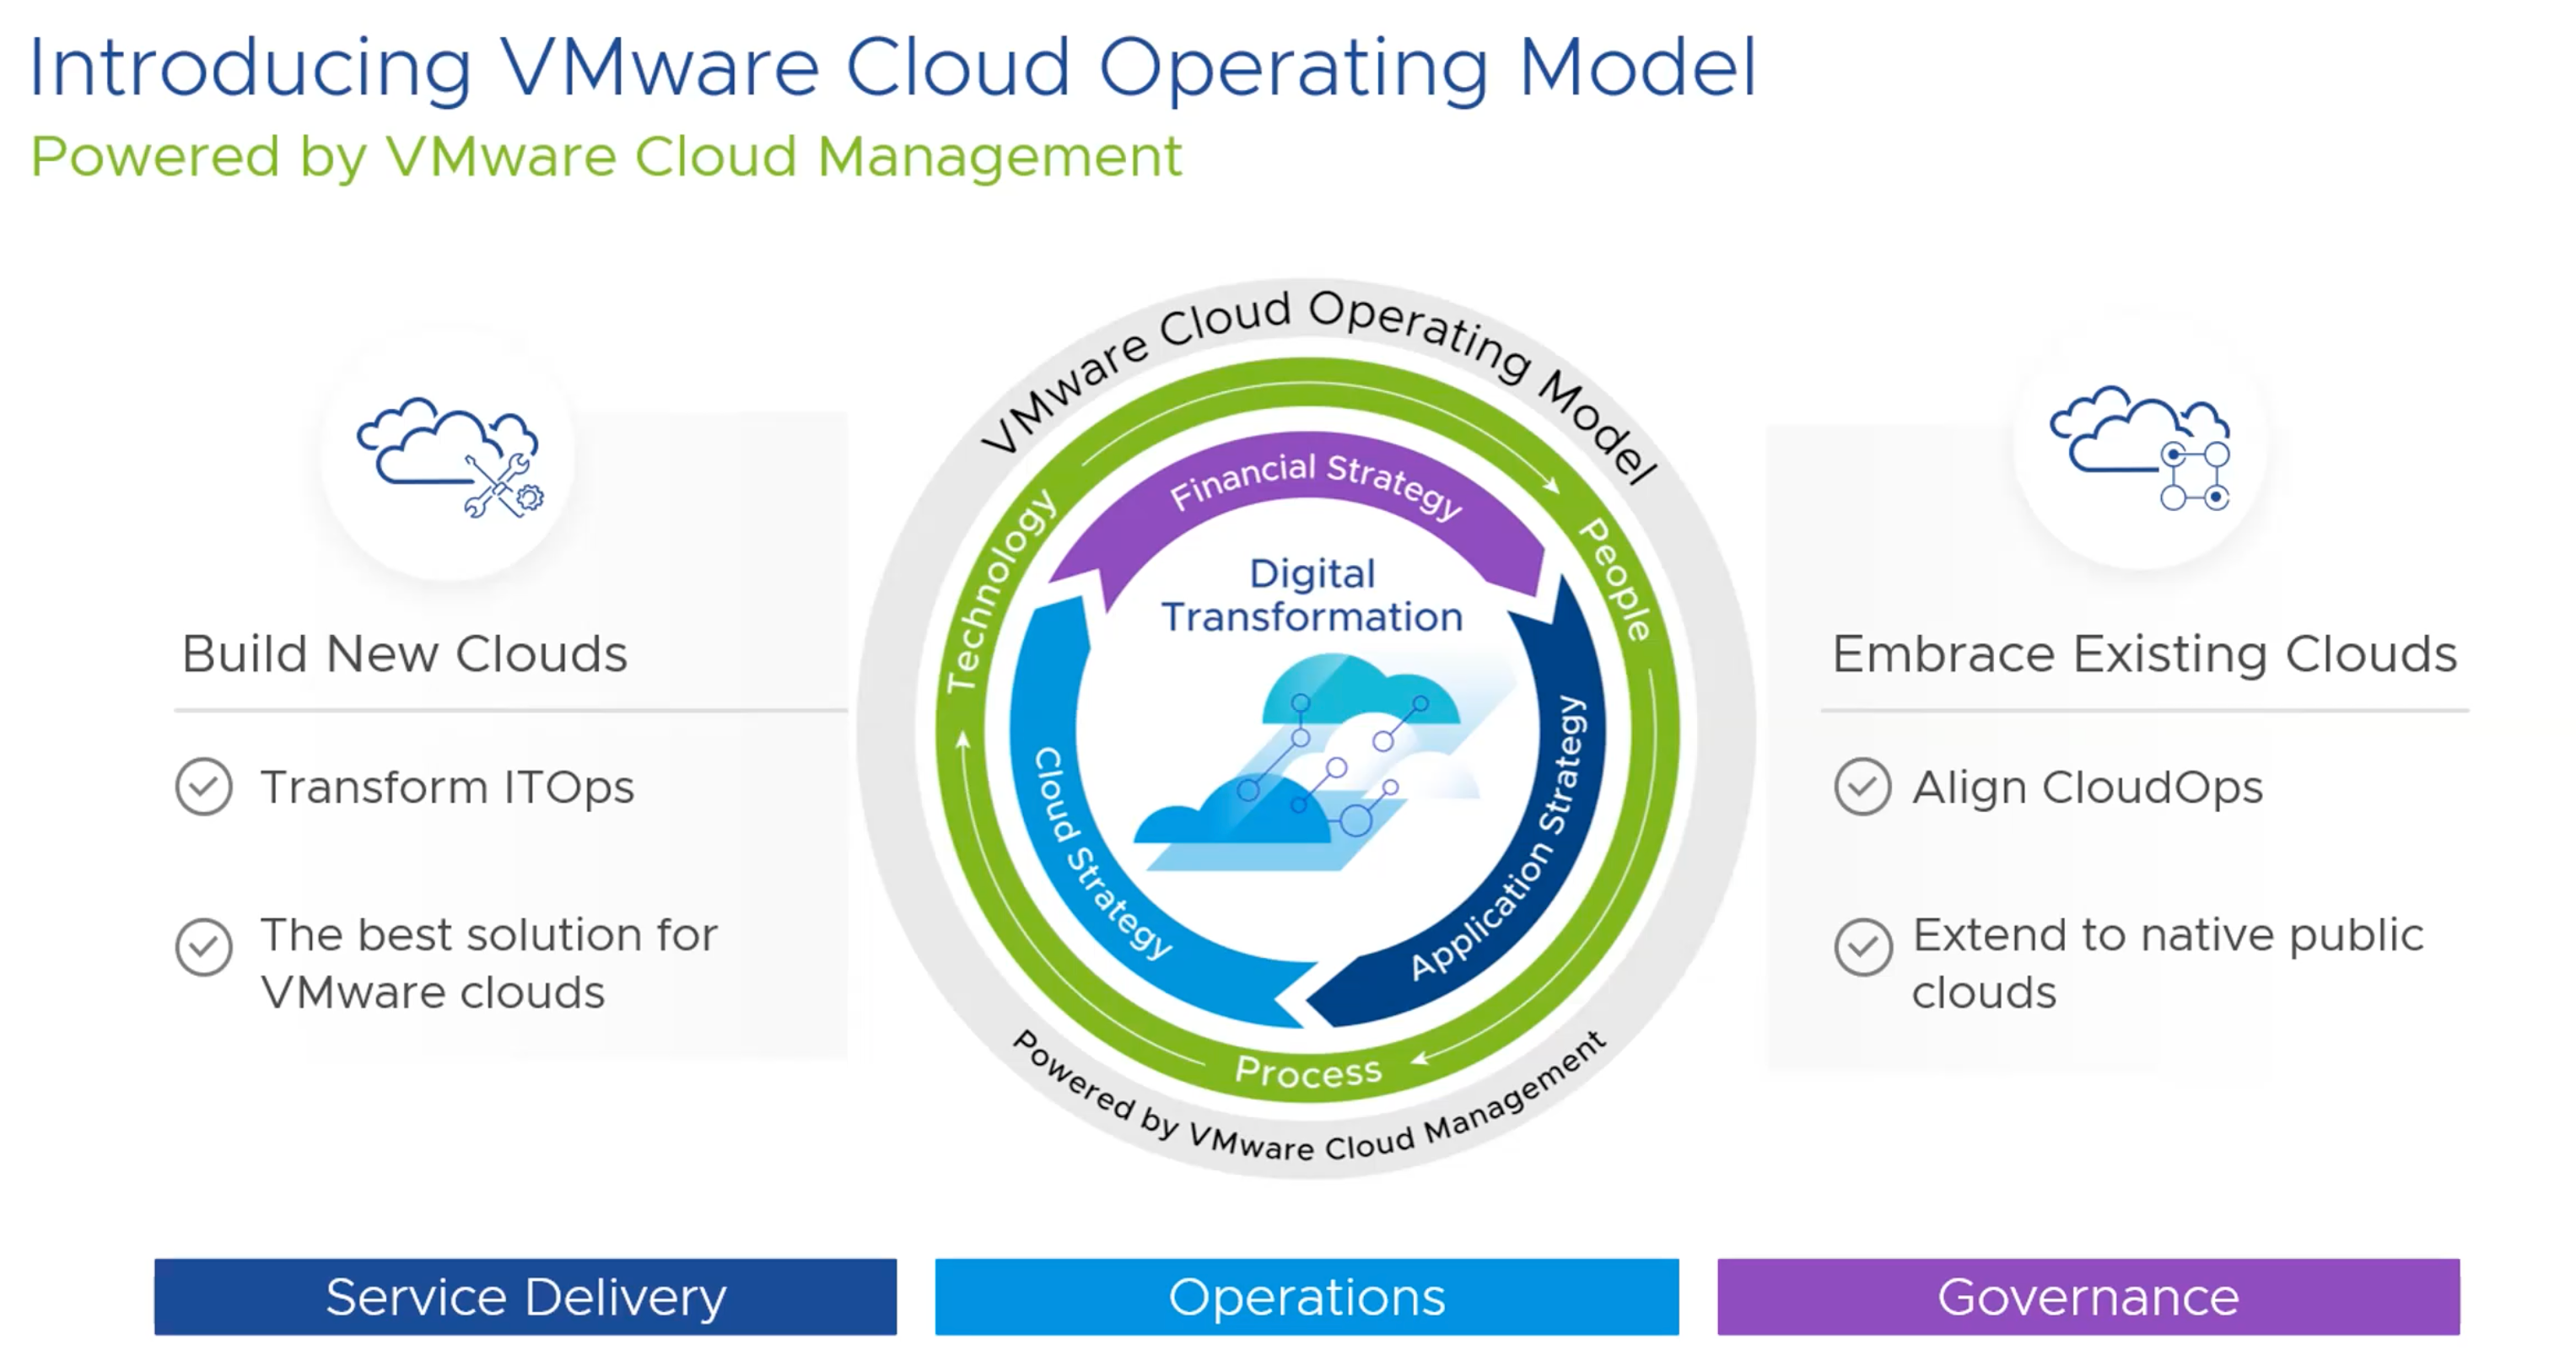 VMware Cloud Operating Model